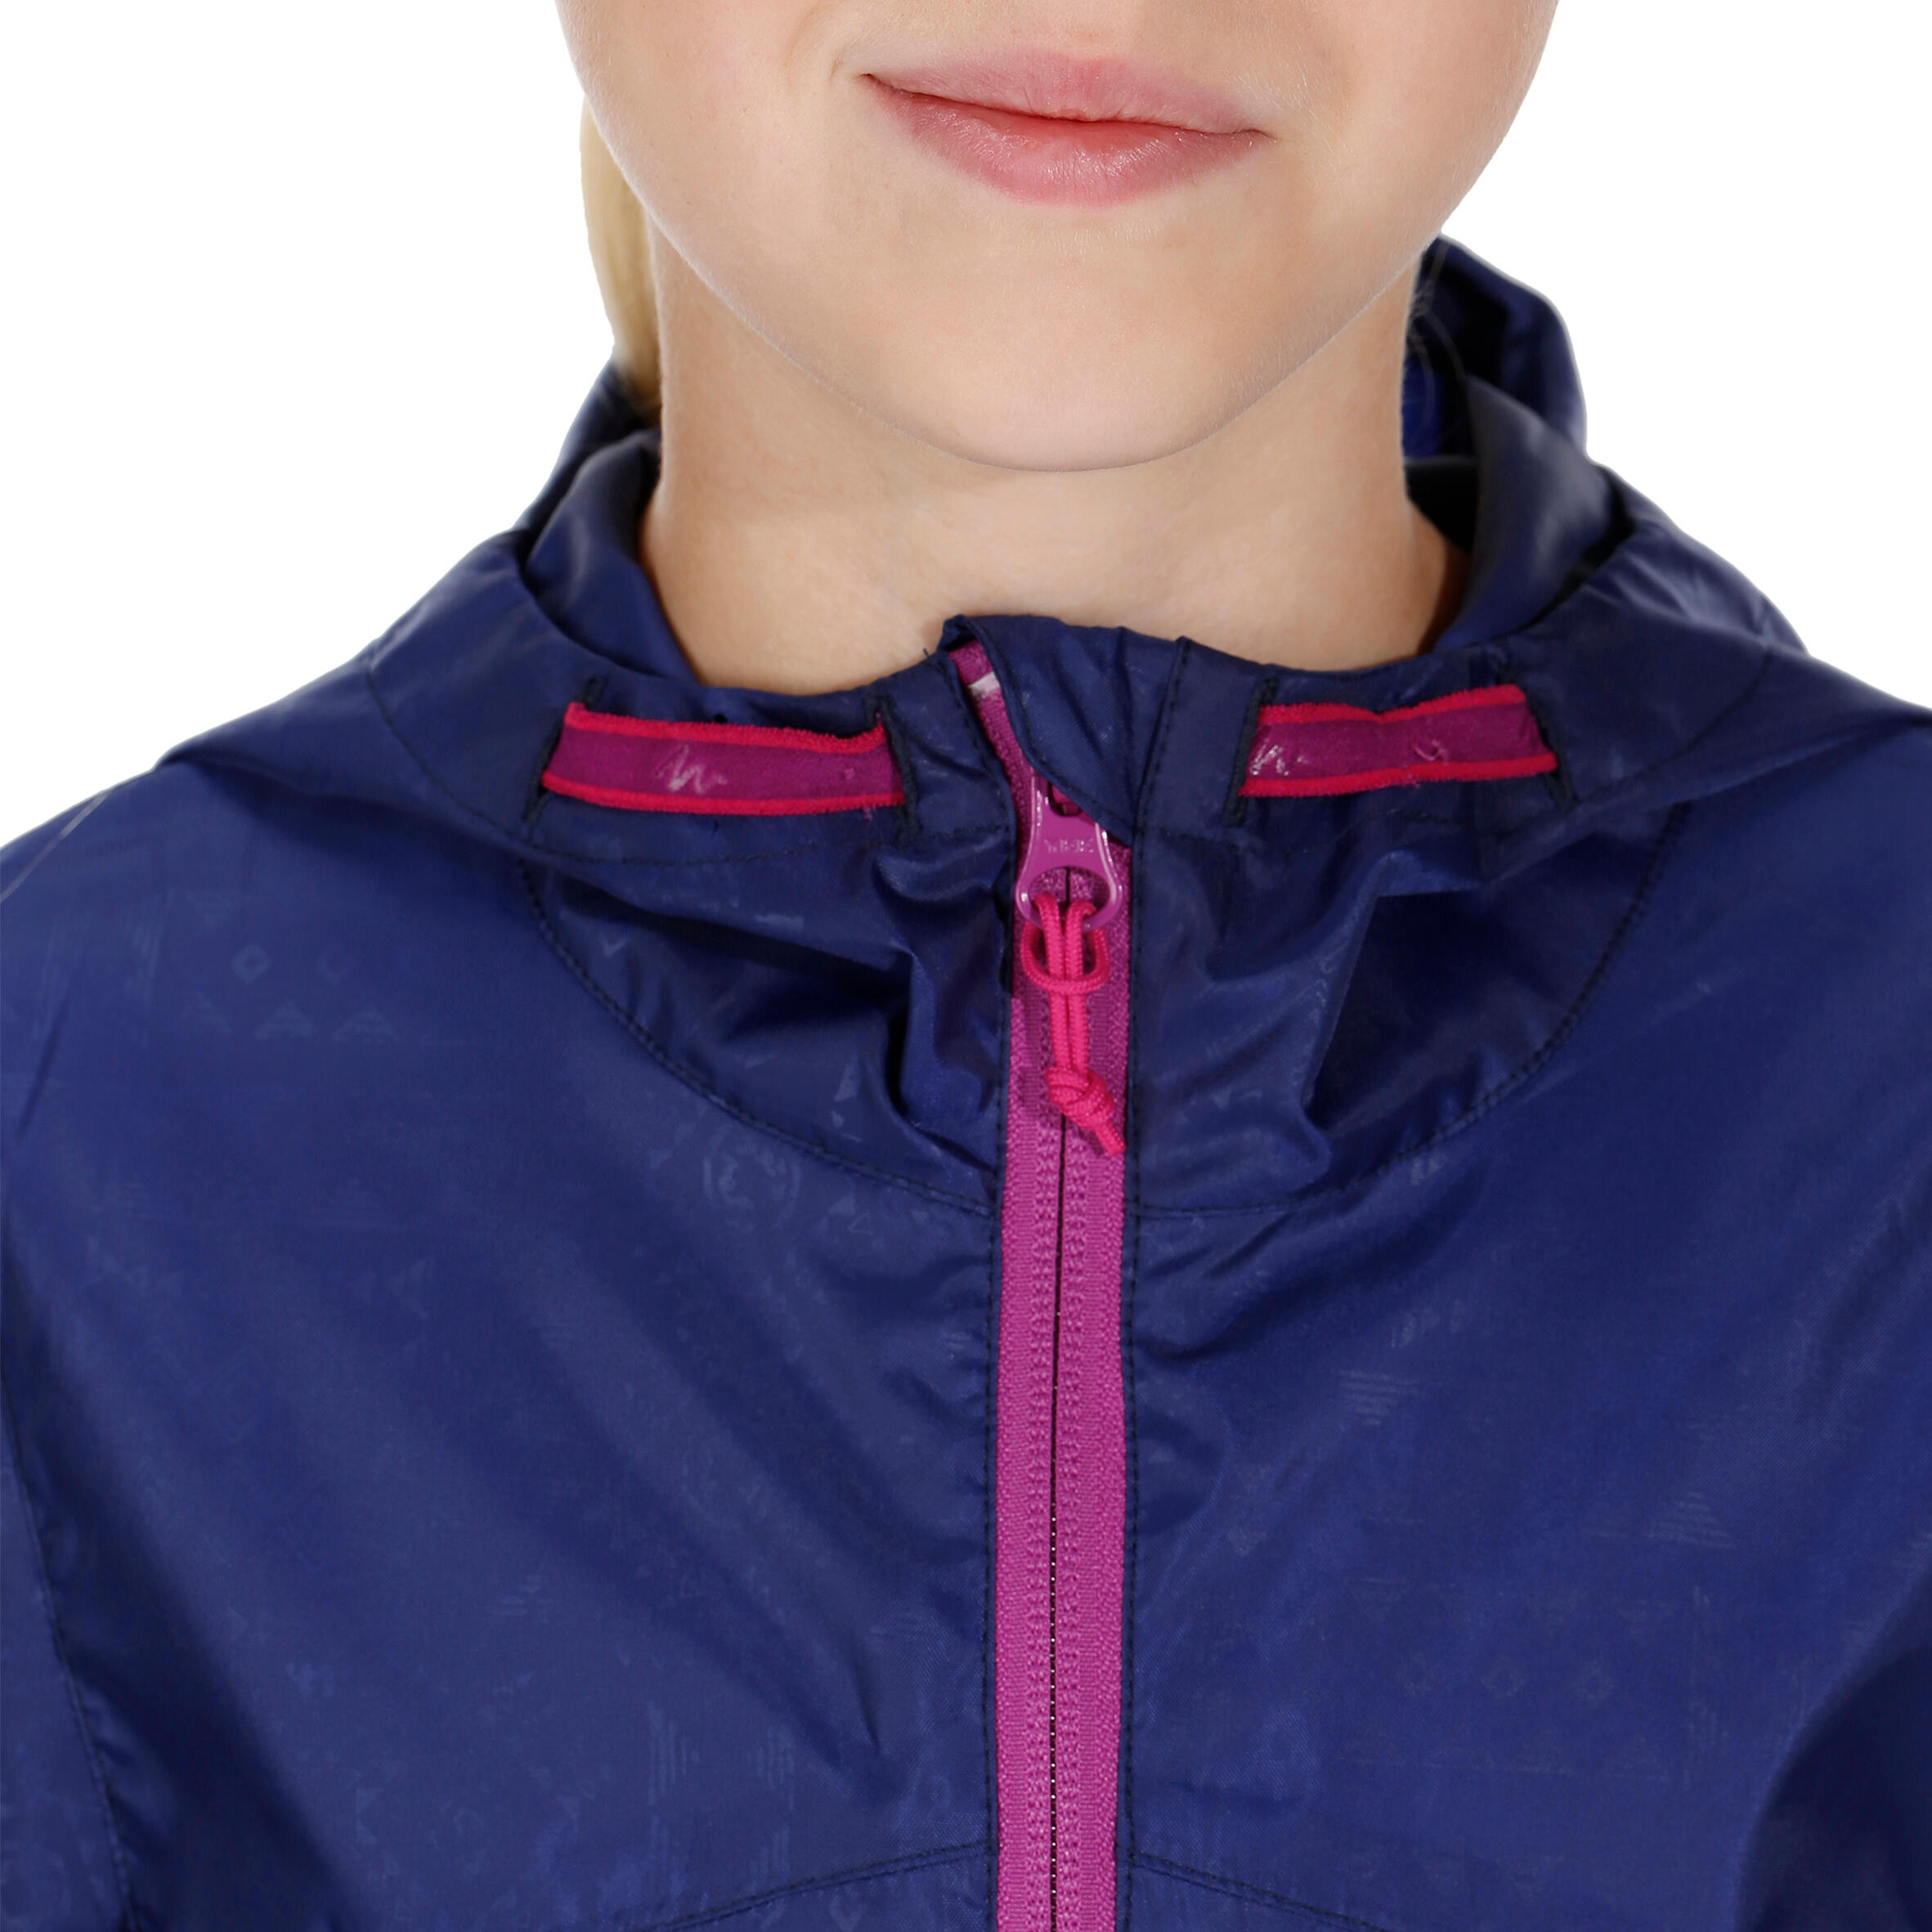 Hike 100 Waterproof Hiking Girl's Jacket - Navy Blue 9/14